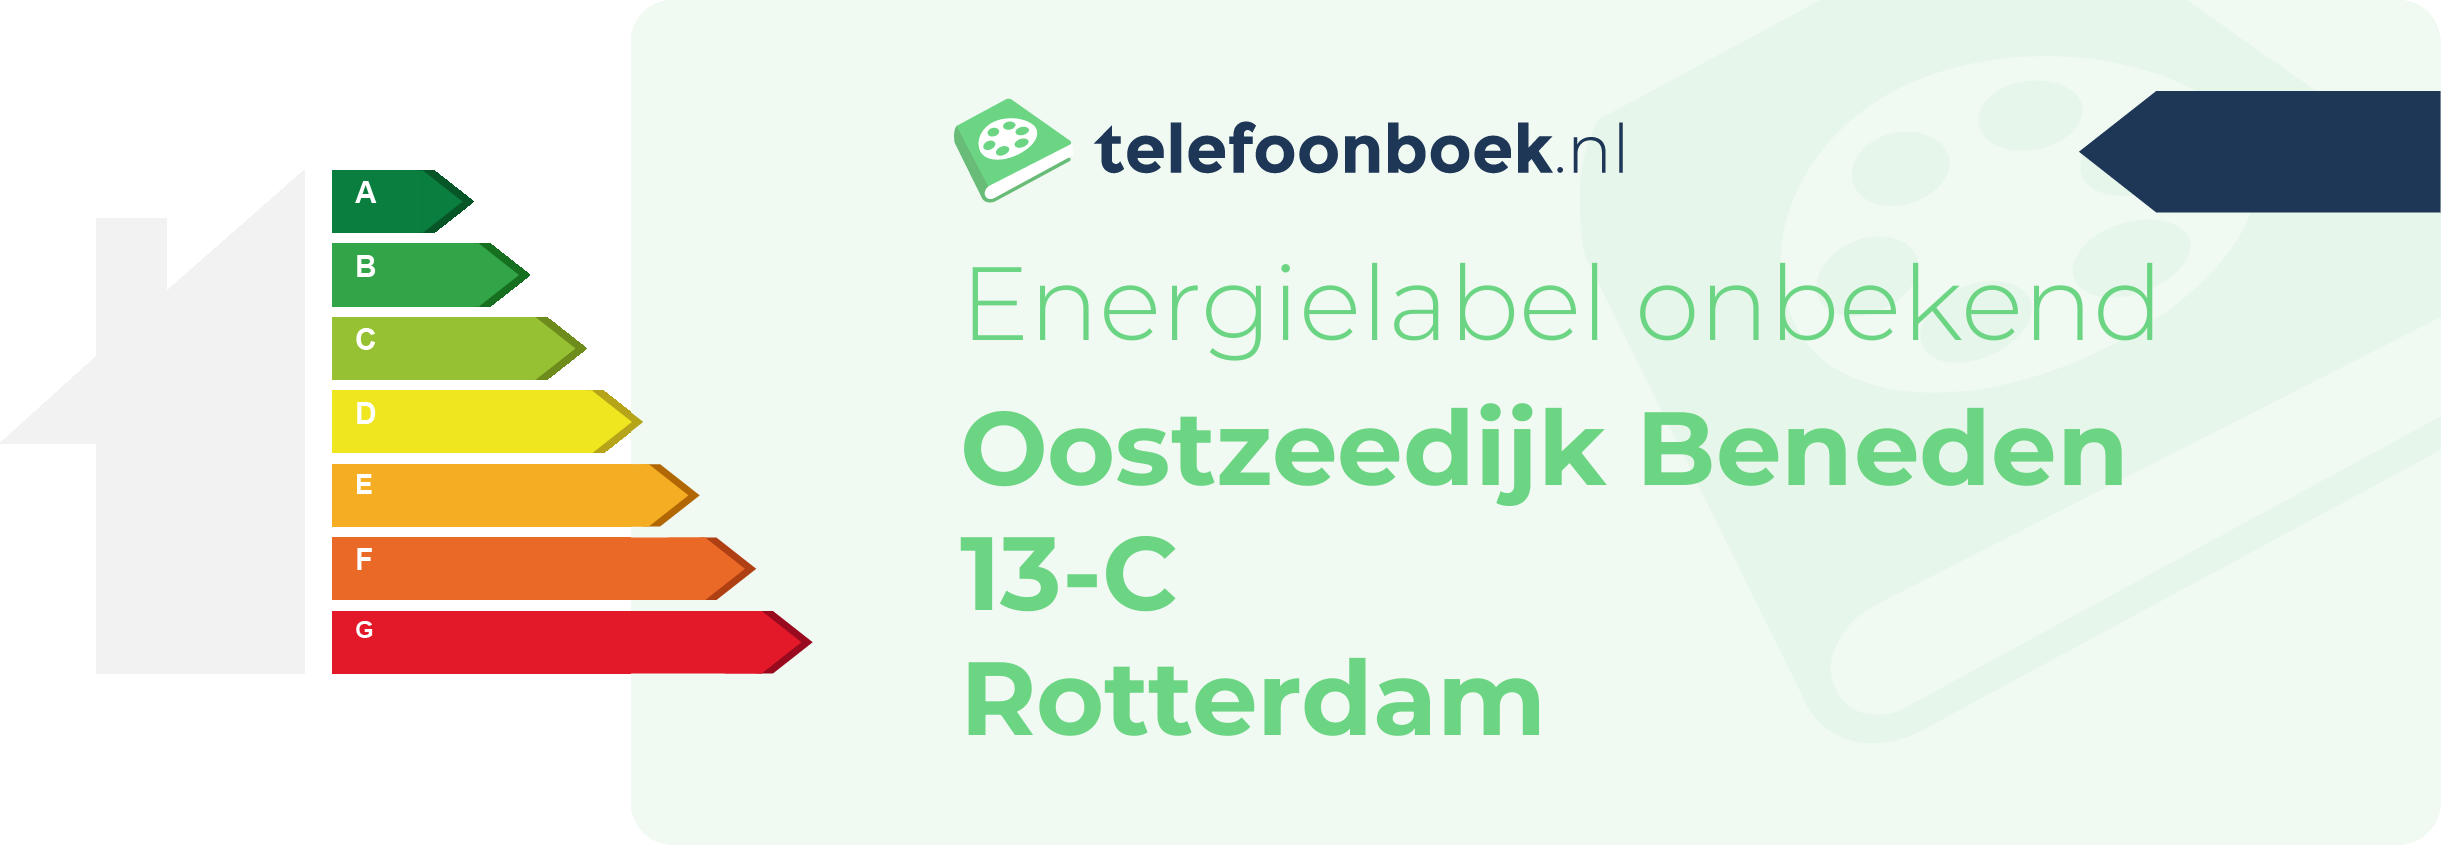 Energielabel Oostzeedijk Beneden 13-C Rotterdam